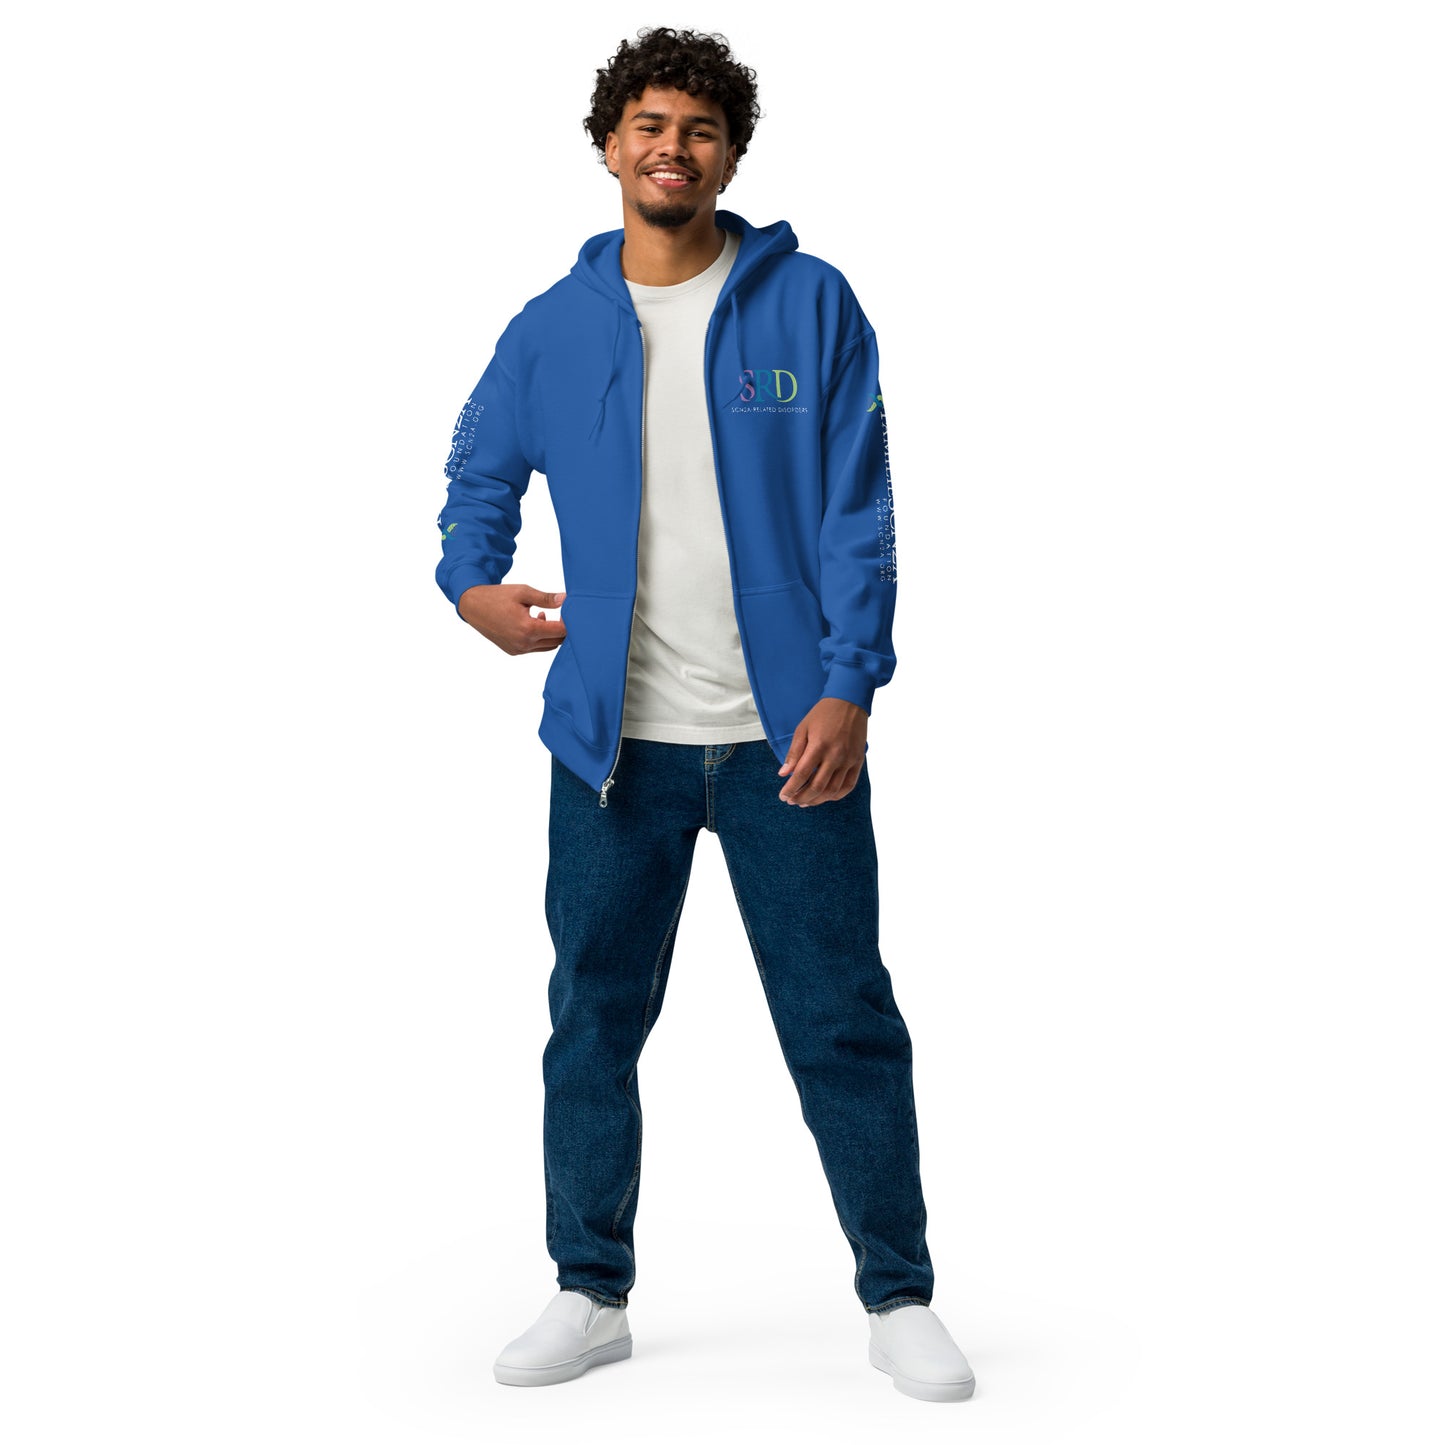 SRD Unisex heavy blend zip hoodie